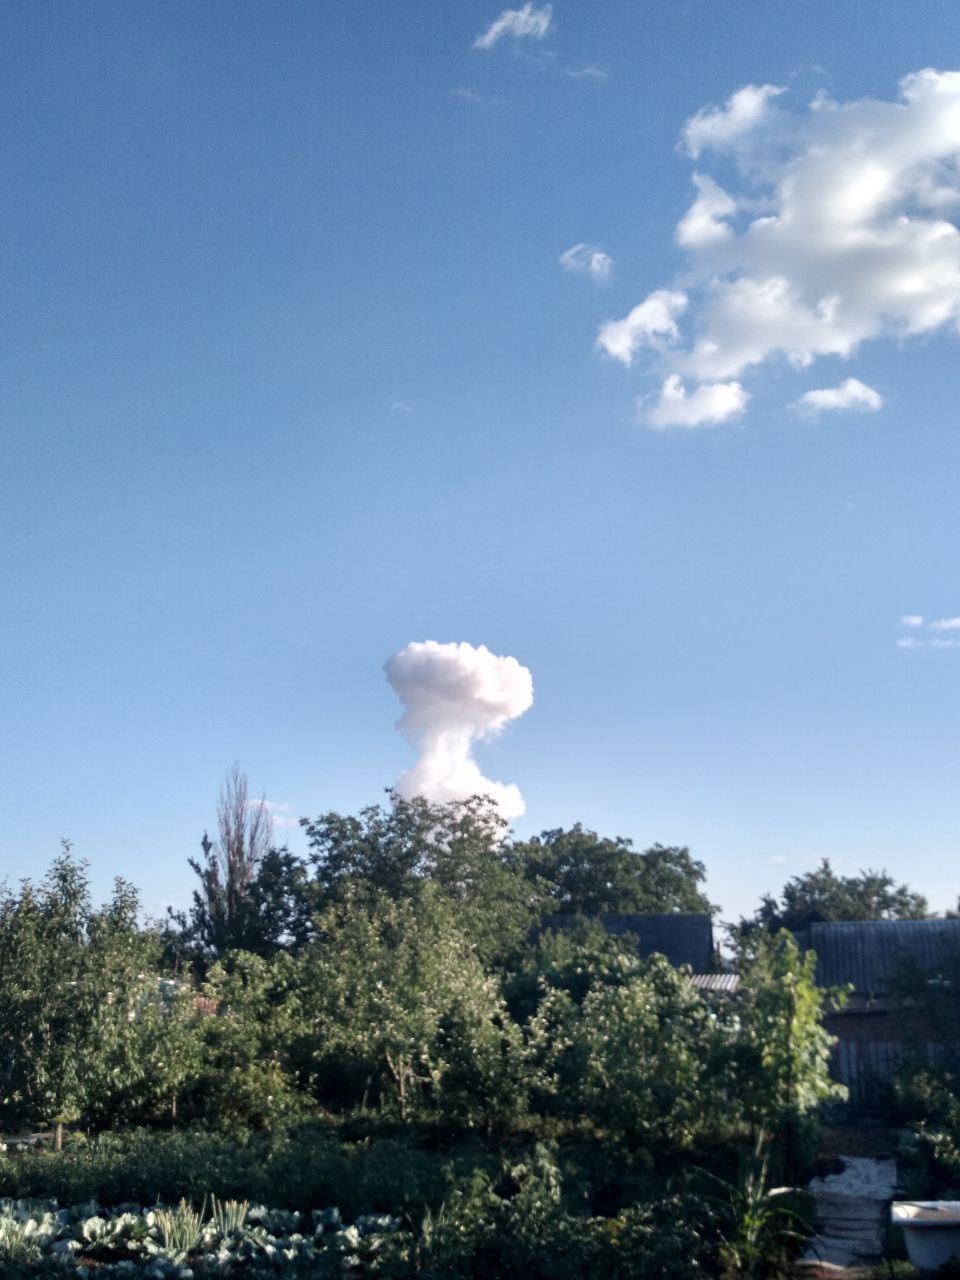 Авиаудар ВКС (около 18:50 мск) крылатой бомбой ОДАБ-1500 по всушникам в Константиновке, ДНР